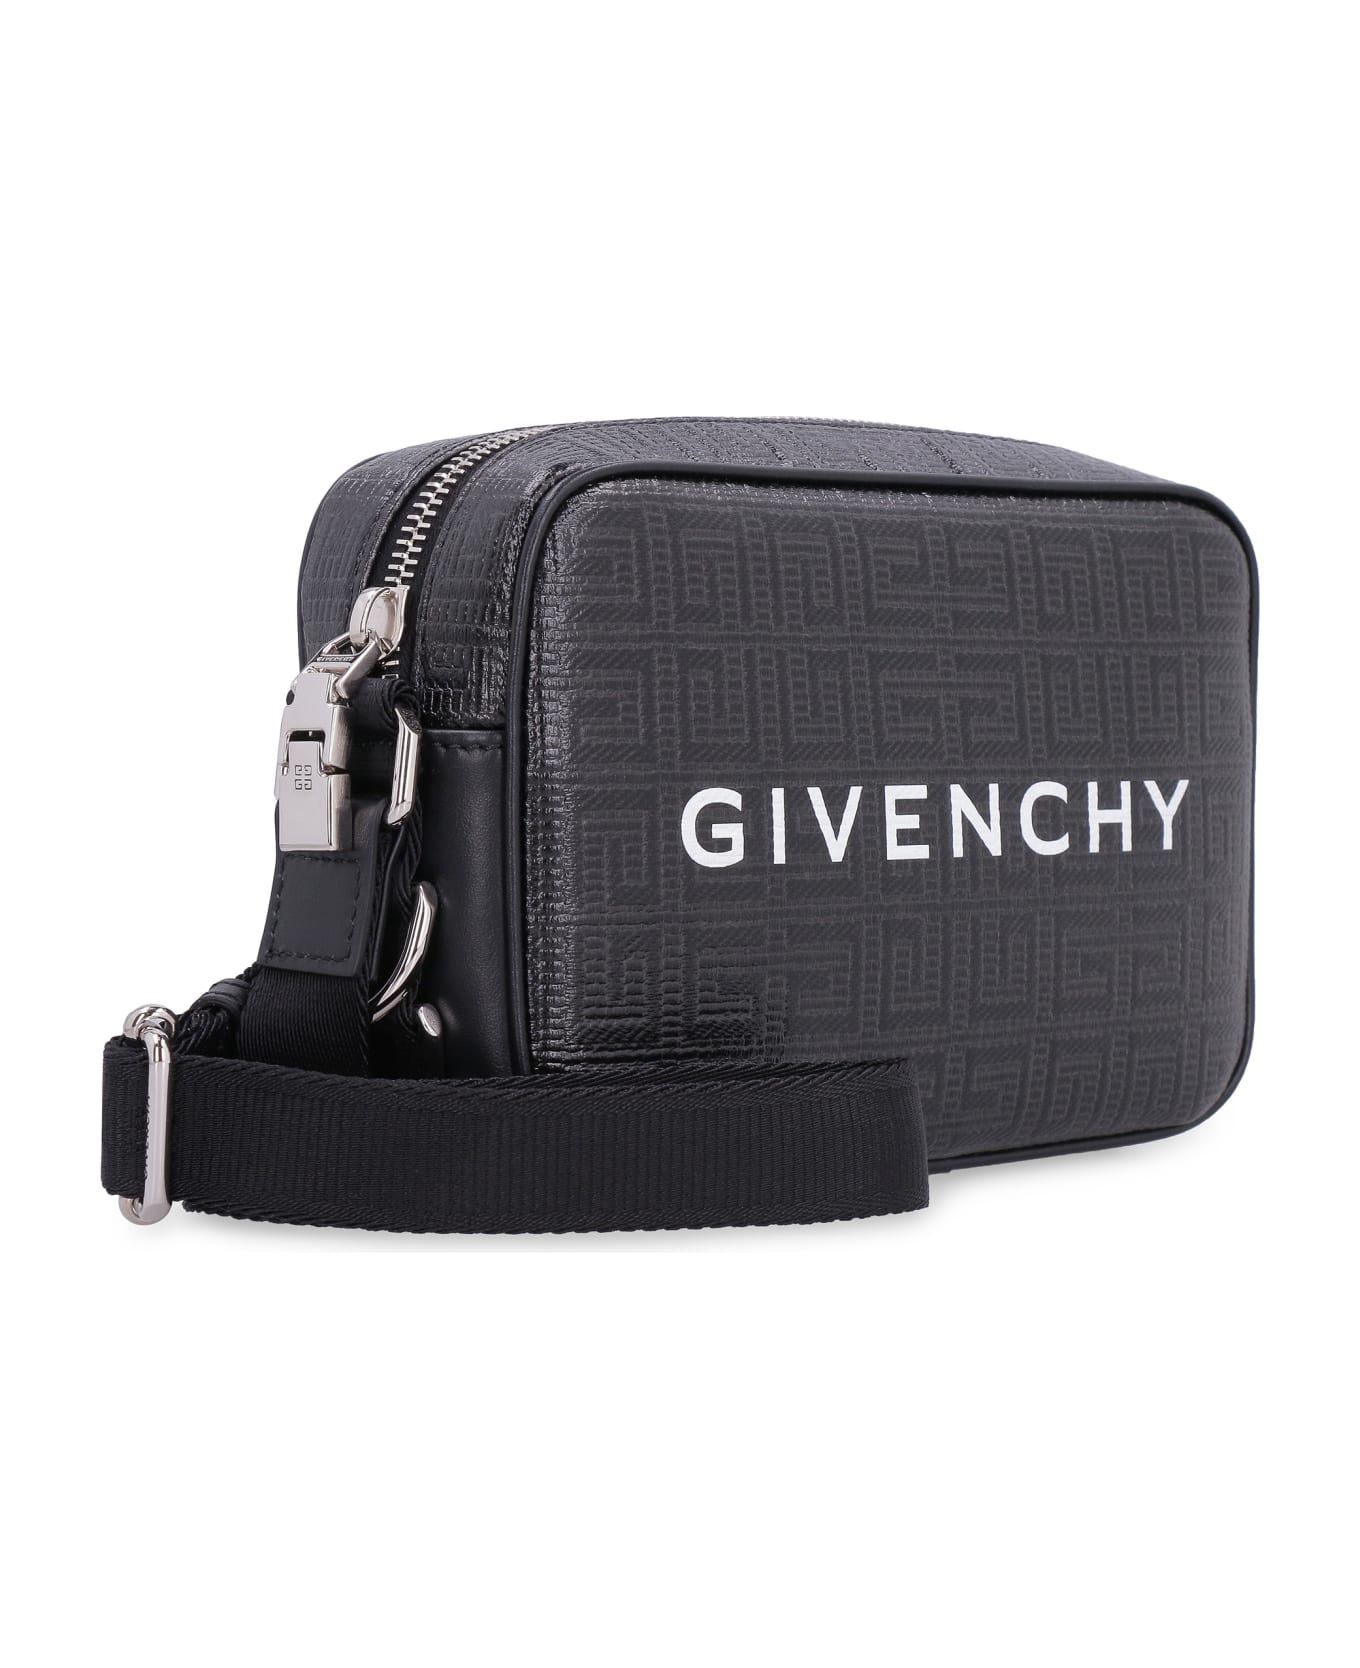 Givenchy G-essentials Messenger Bag With Logo - Nero